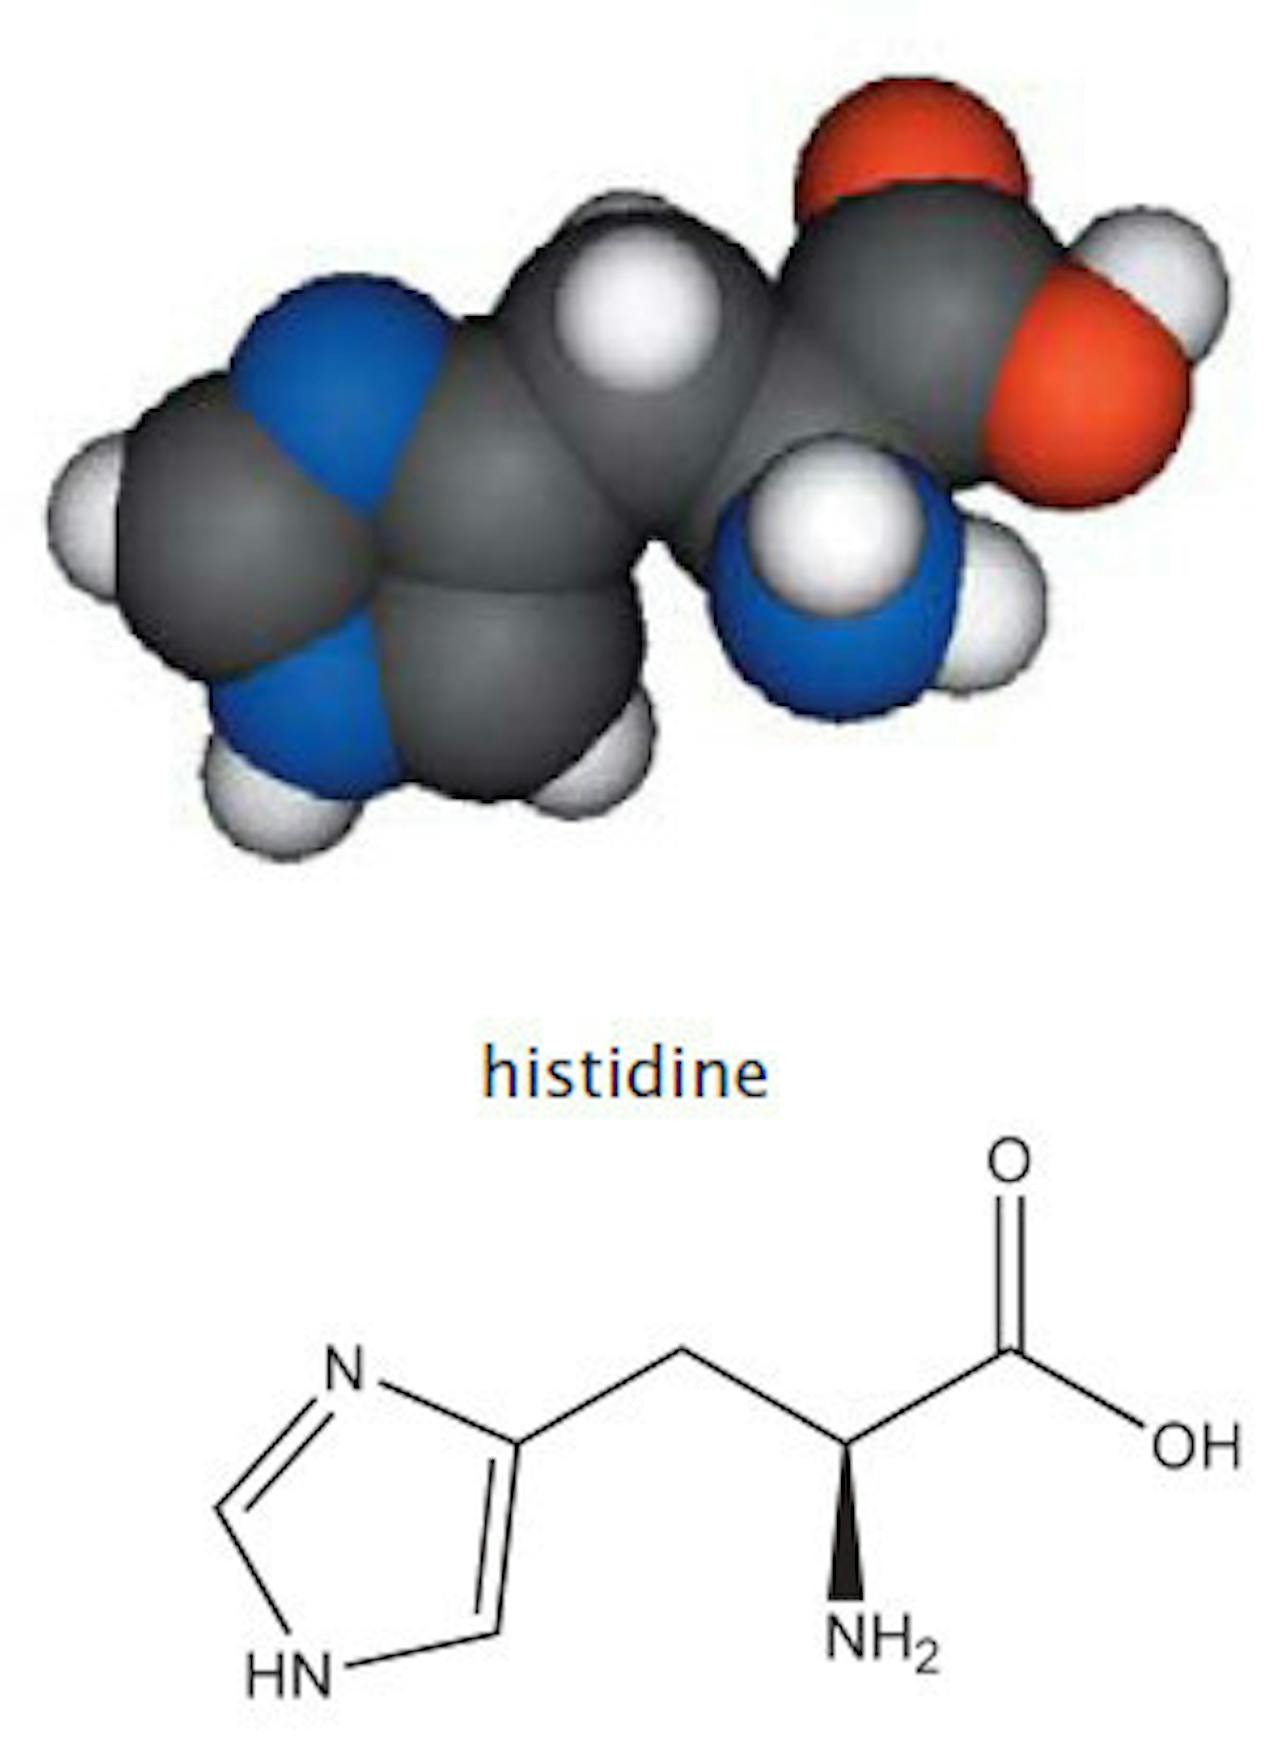 Een afbeelding van het molecuul histidine.